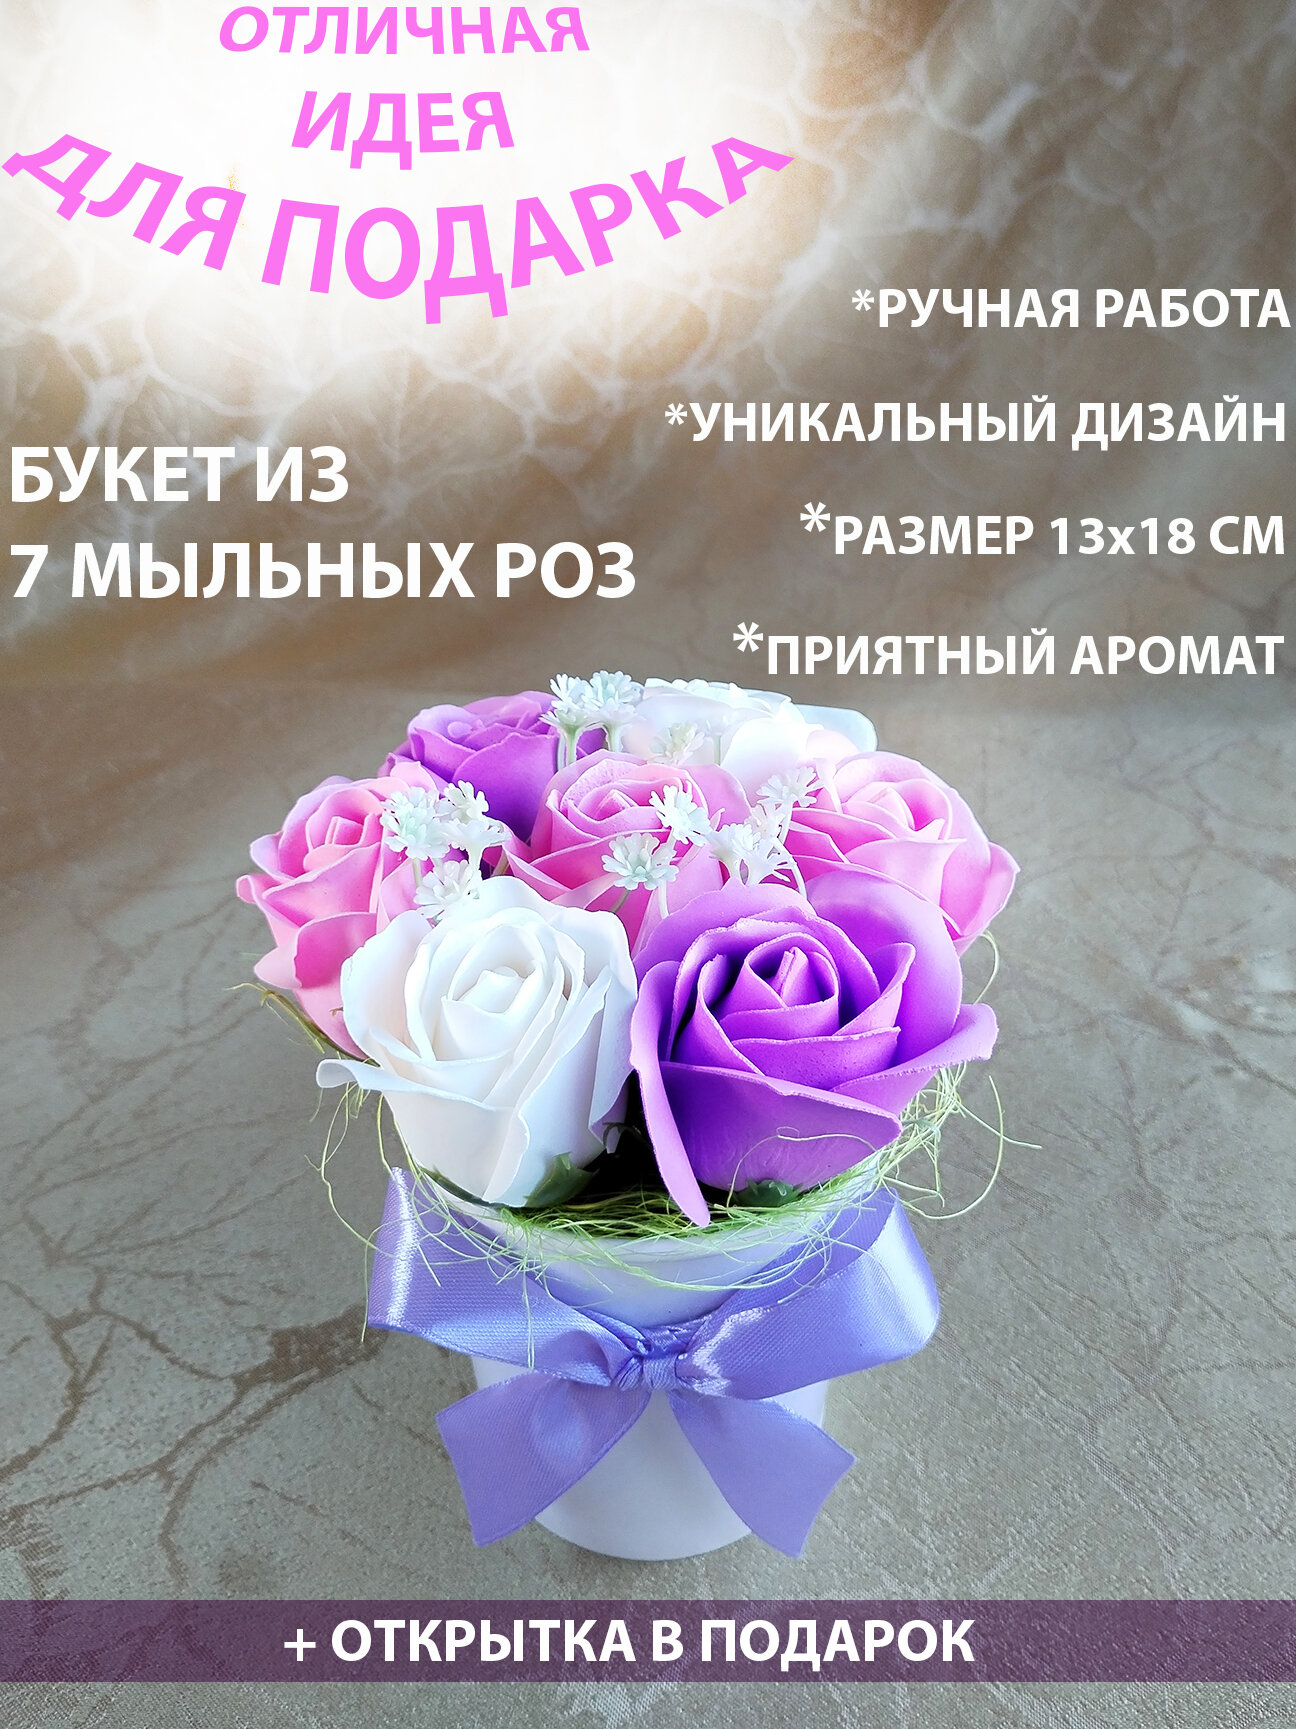 Букет из мыльных роз. Подарок маме, подарок на день рождения, подарок на 8 марта